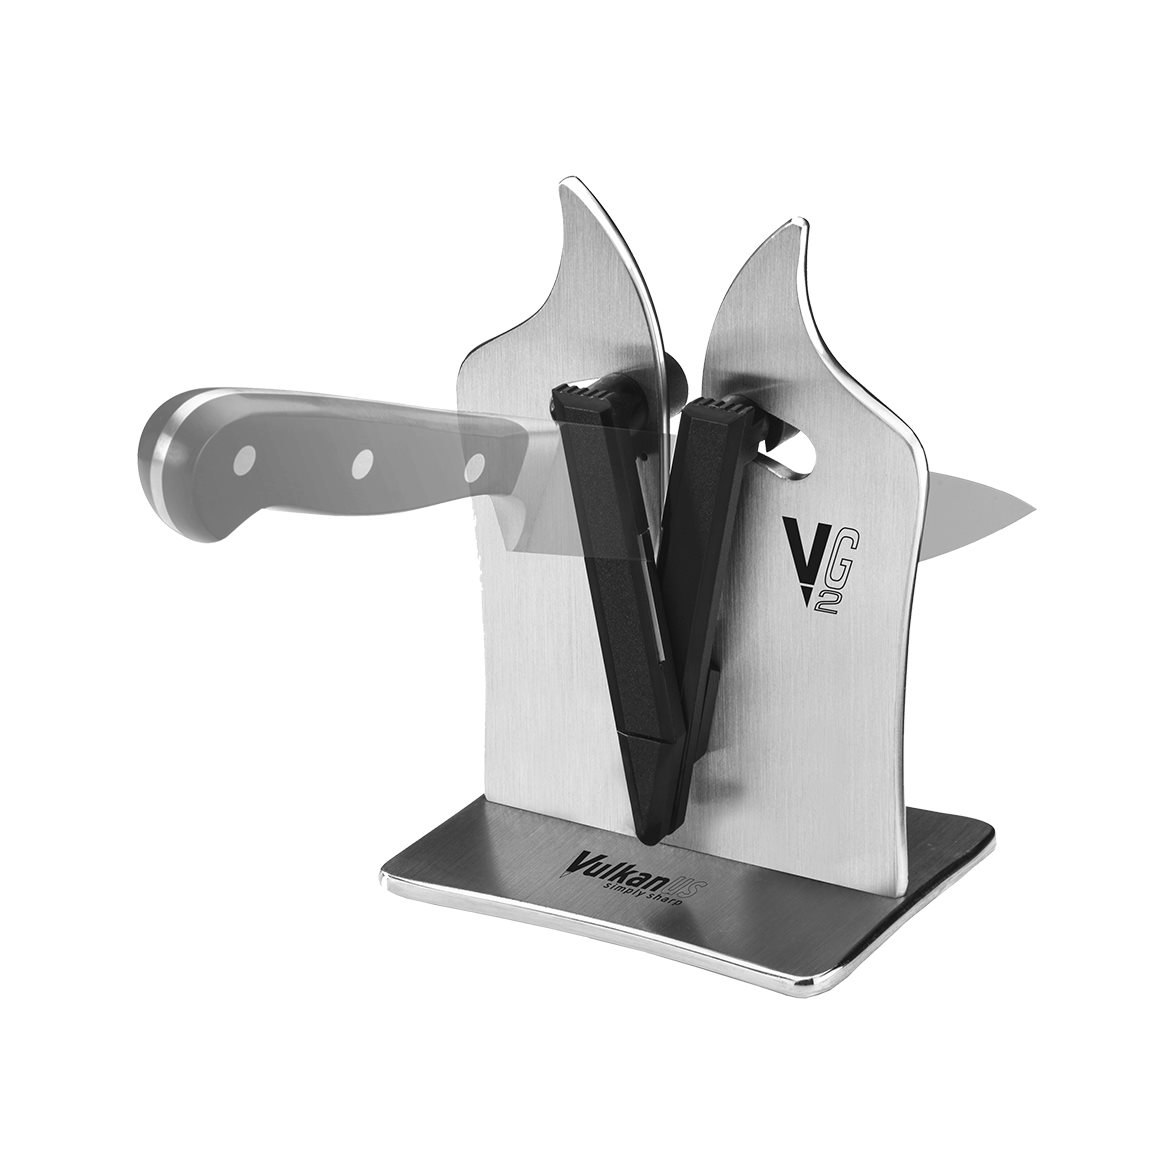 Sharp'Easy knife sharpener stainless steel